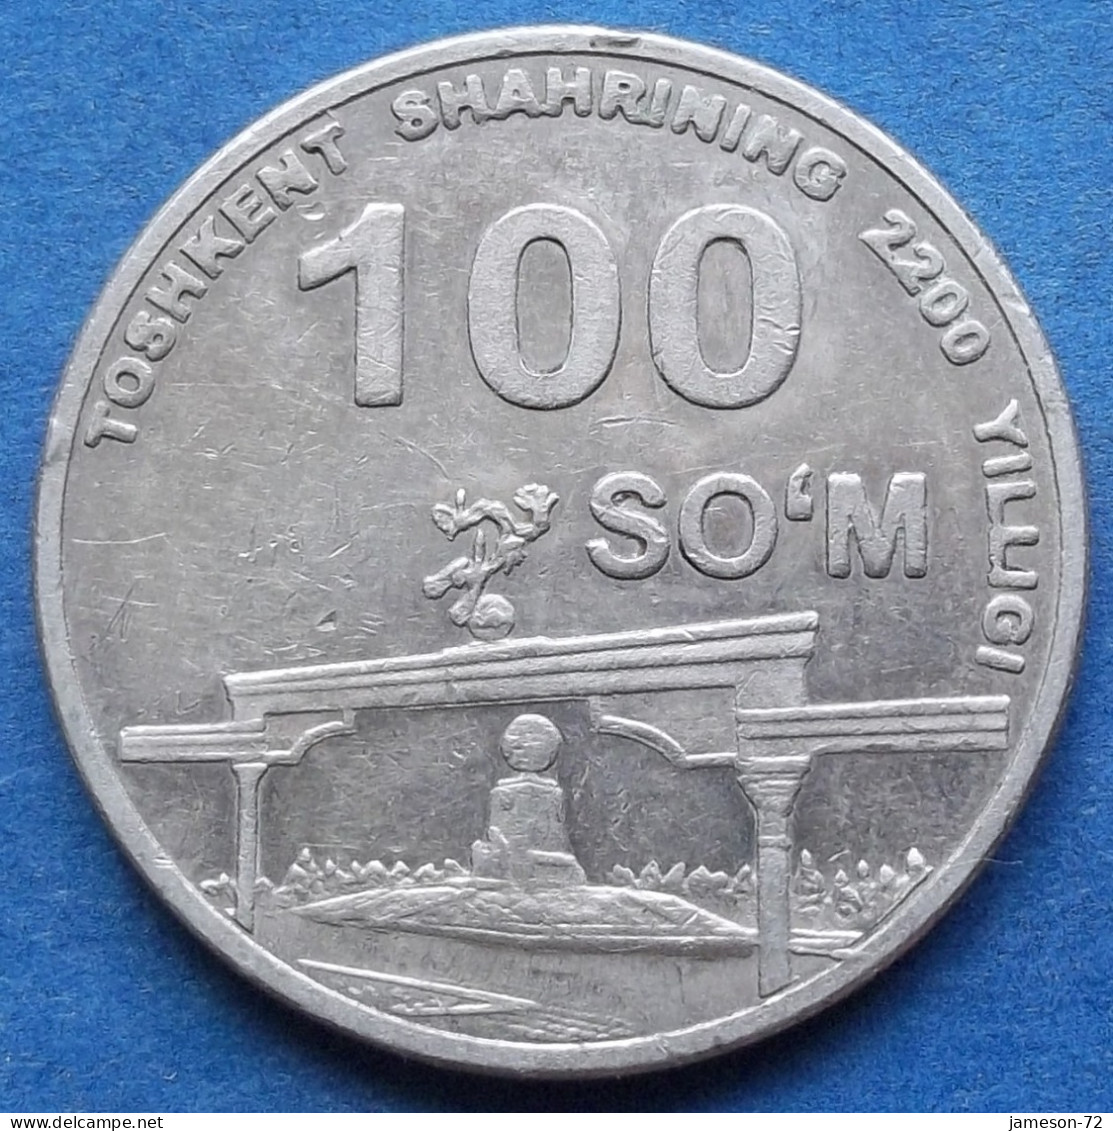 UZBEKISTAN - 100 So'm 2009 "Arch Of Independence" KM# 31 - Edelweiss Coins - Uzbenisktán